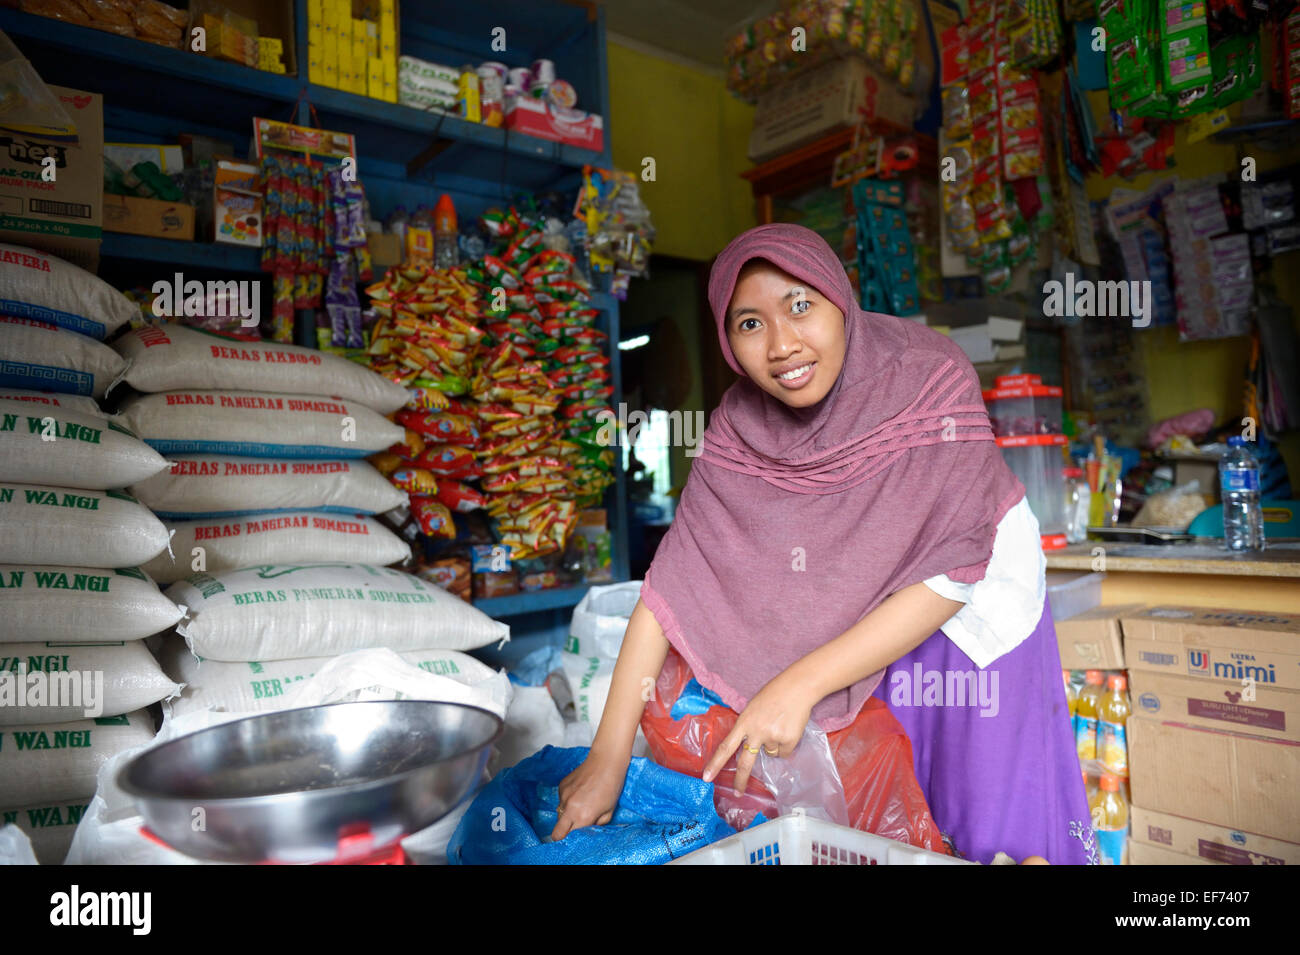 Mujer joven con velo, ayudante en una pequeña tienda de comestibles, Lam, subdistrito Rozma Rukam, Aceh, Indonesia Foto de stock